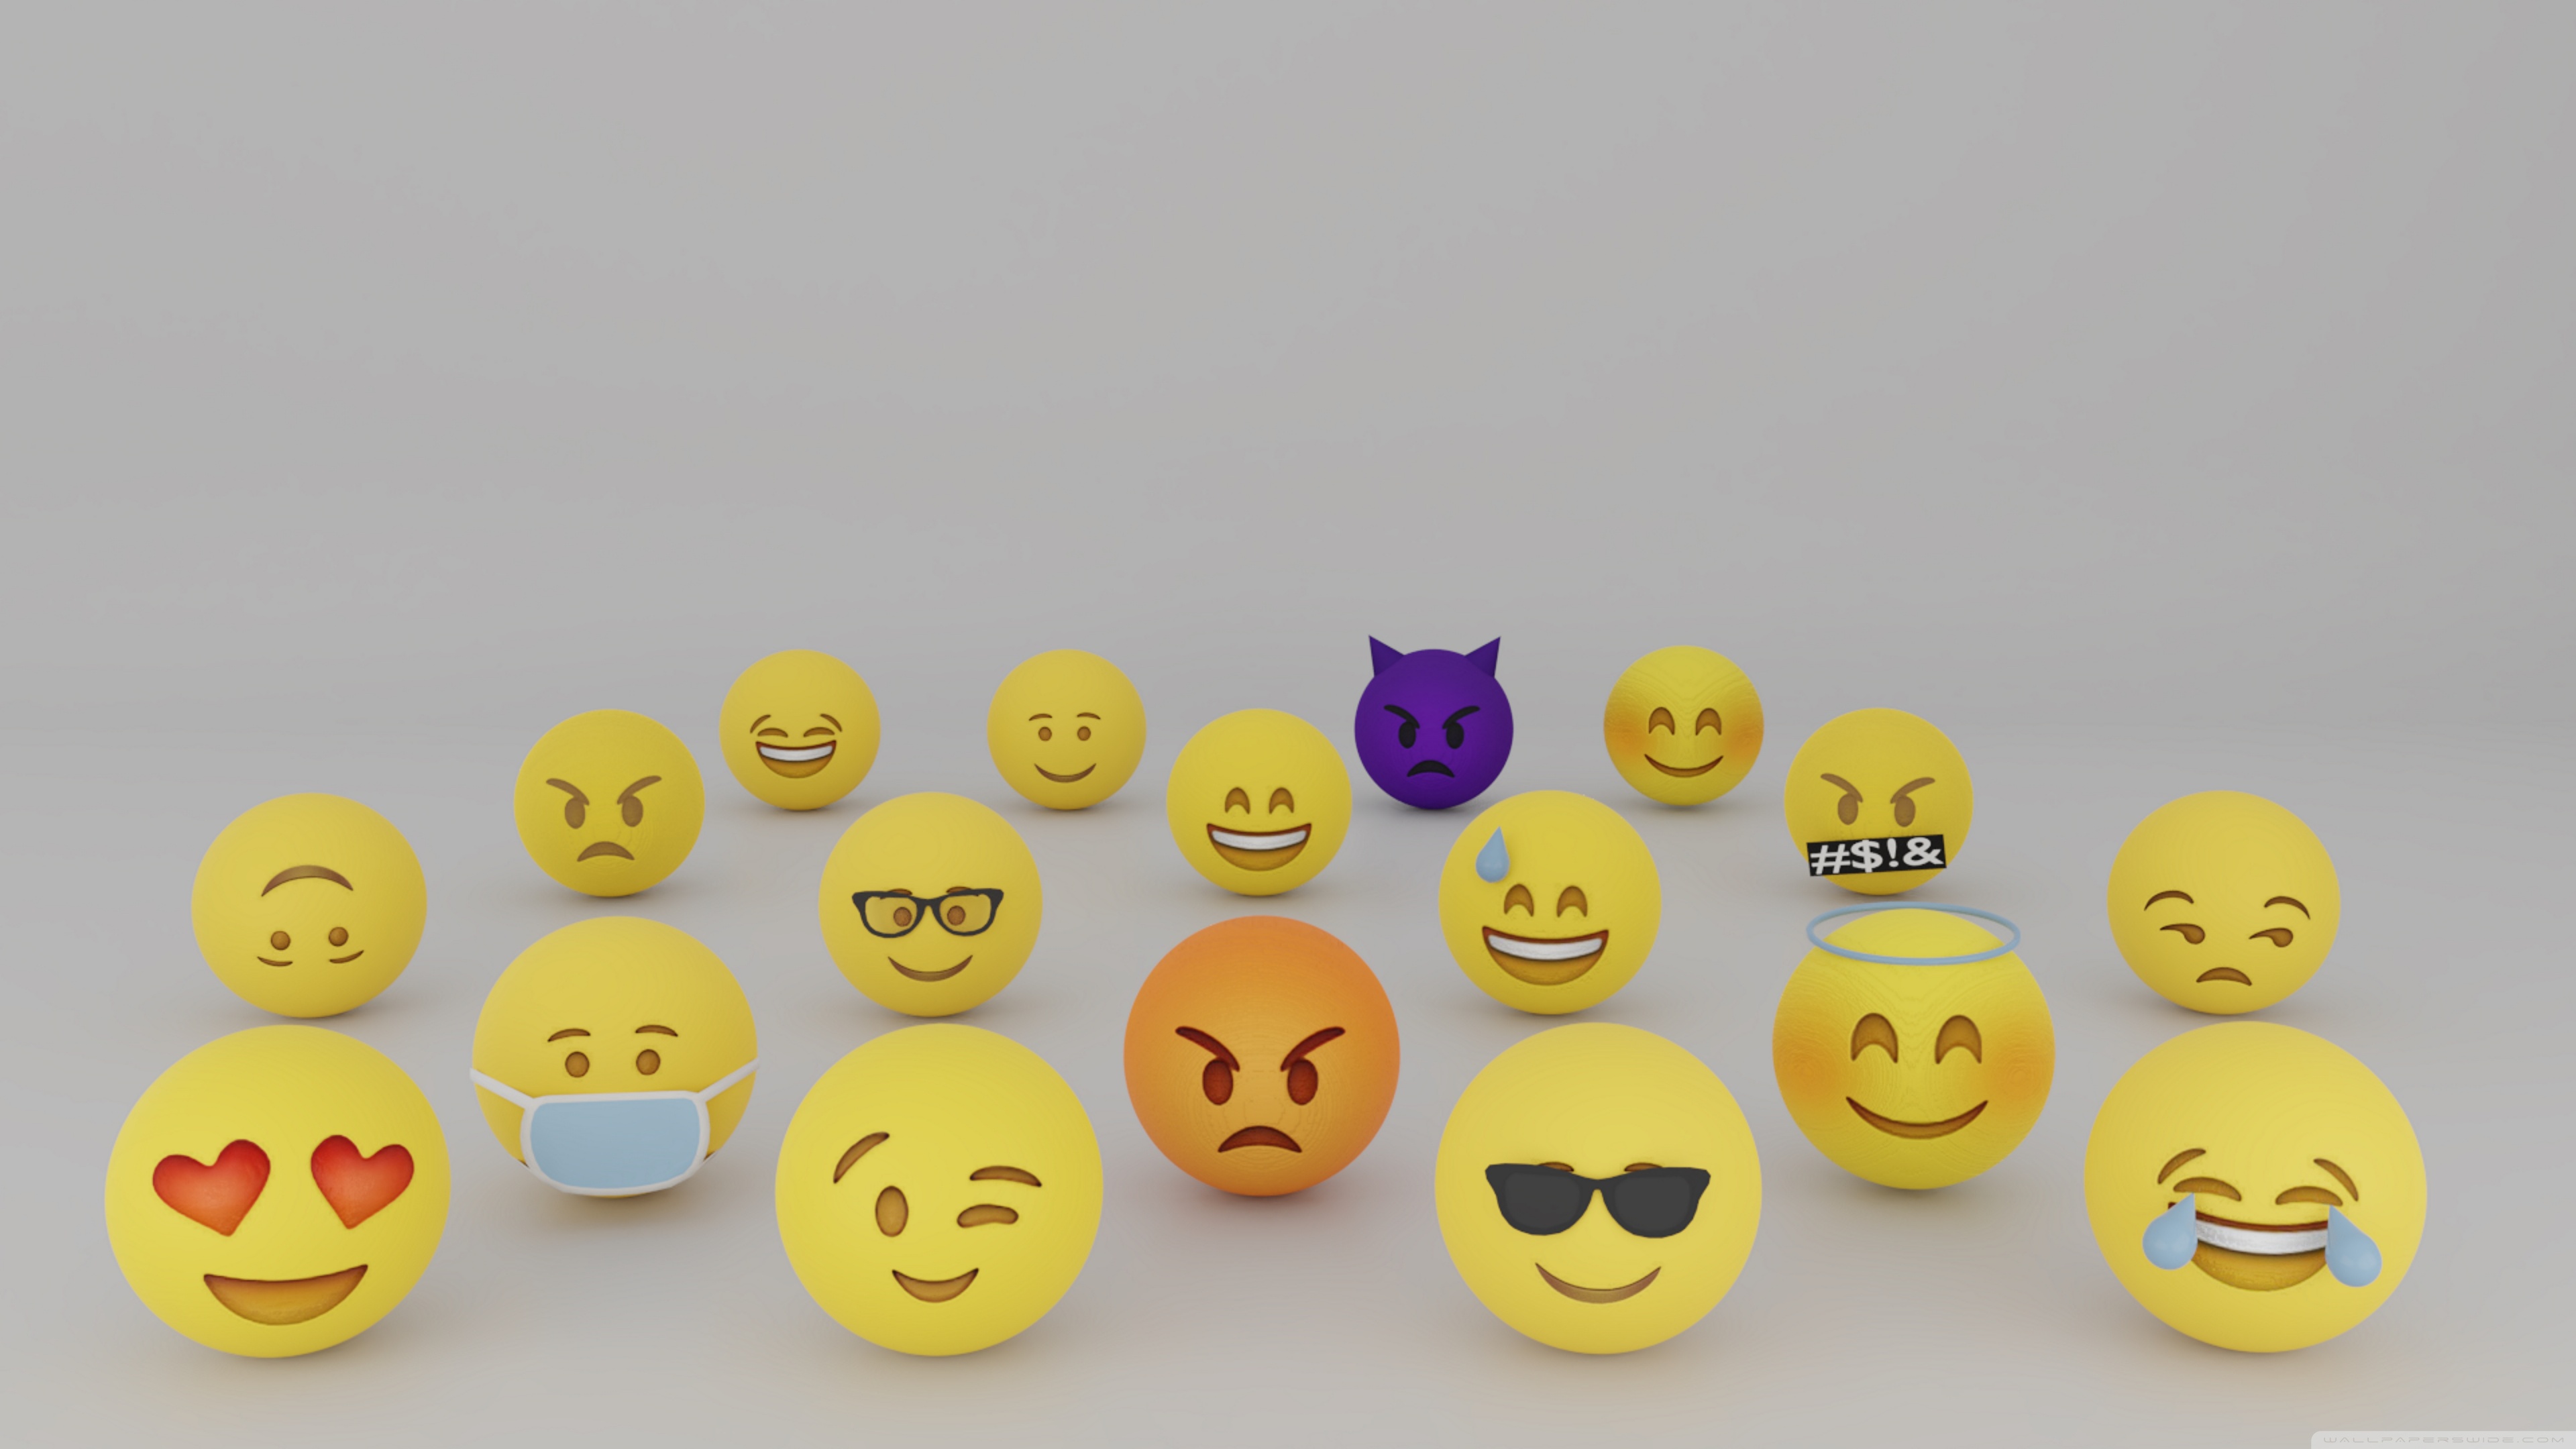 Emoji Wallpaper Images  Free Download on Freepik